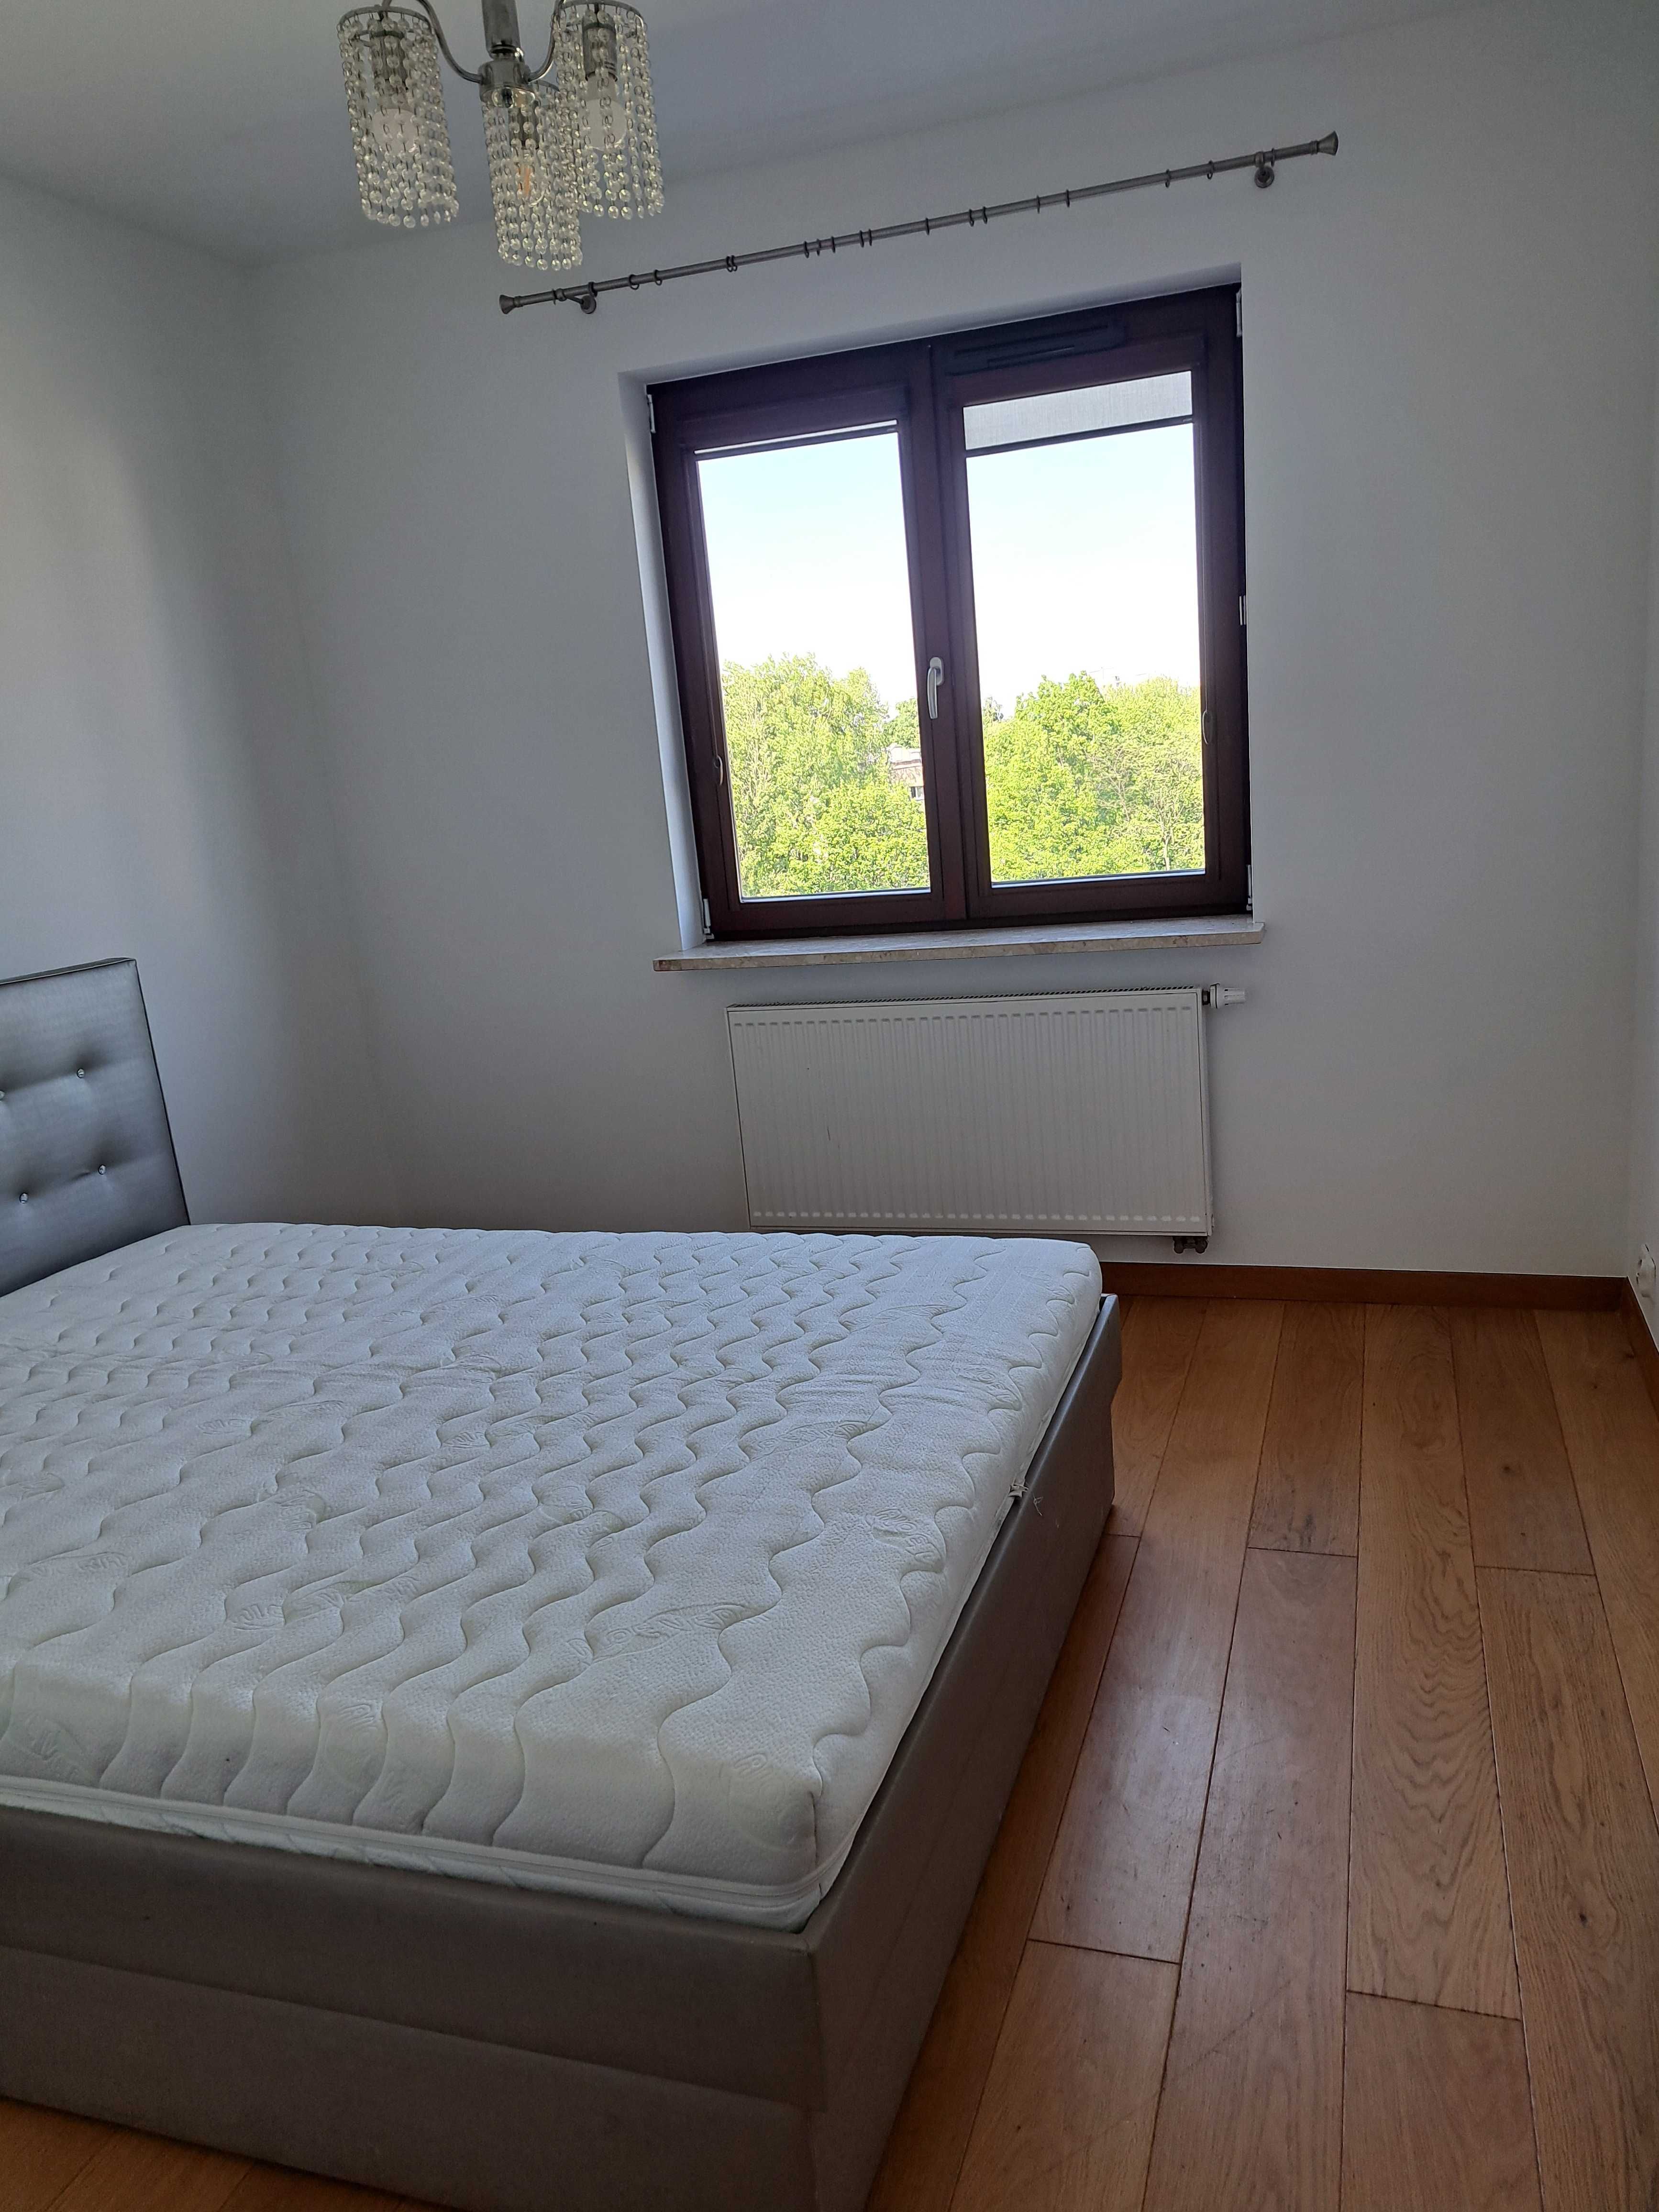 Mieszkanie do wynajęcia 3 pokoje Warszawa Bielany, 72 m2, 5 piętro